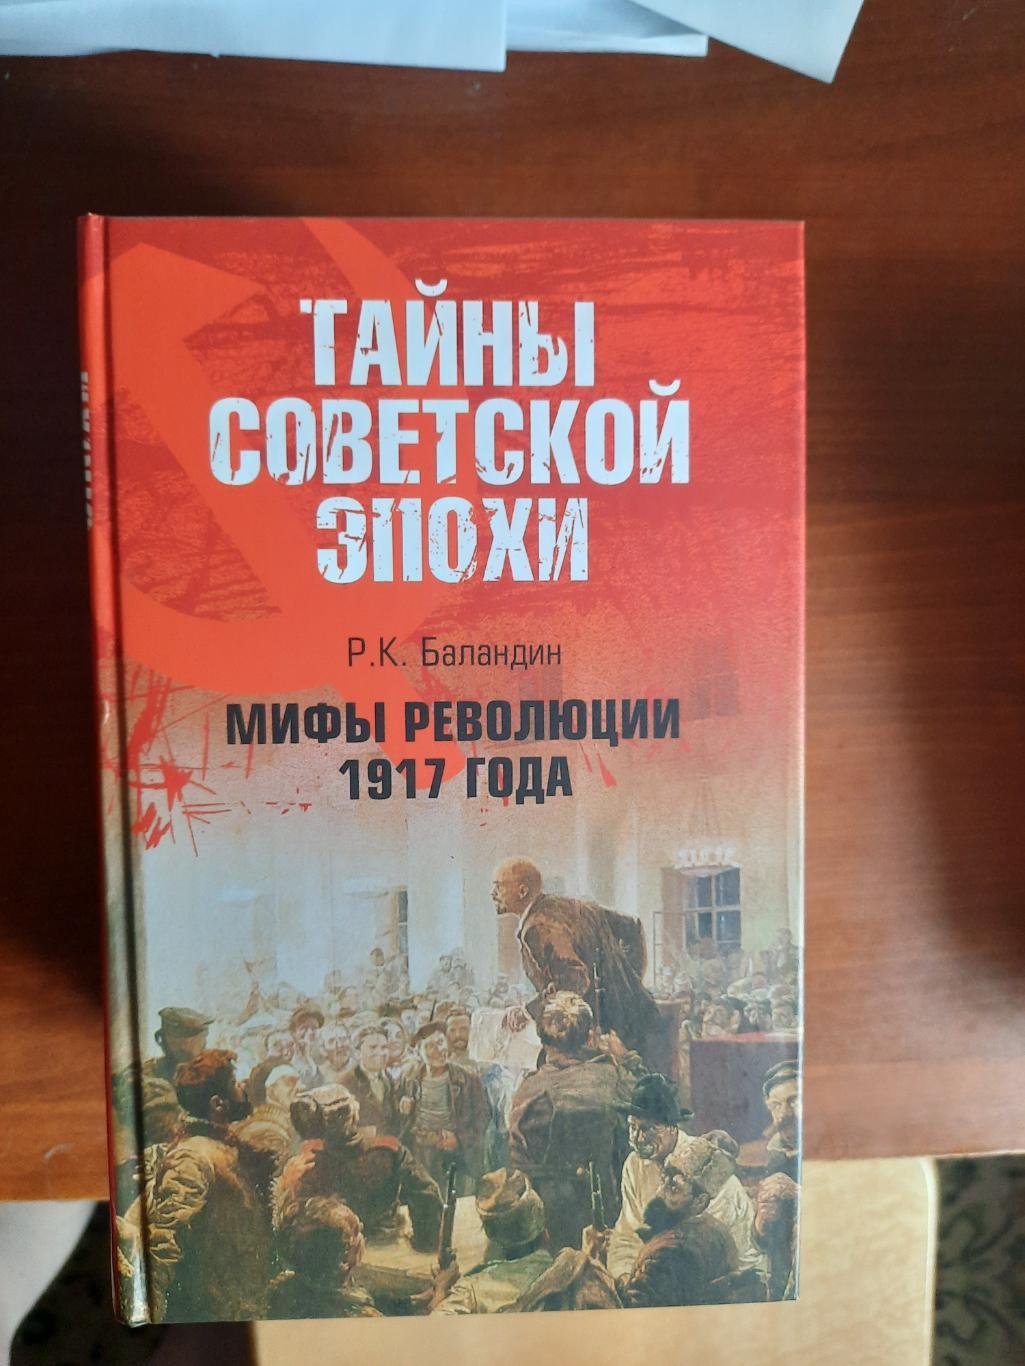 Мифы революции 1917 года (серия Тайны советской эпохи)